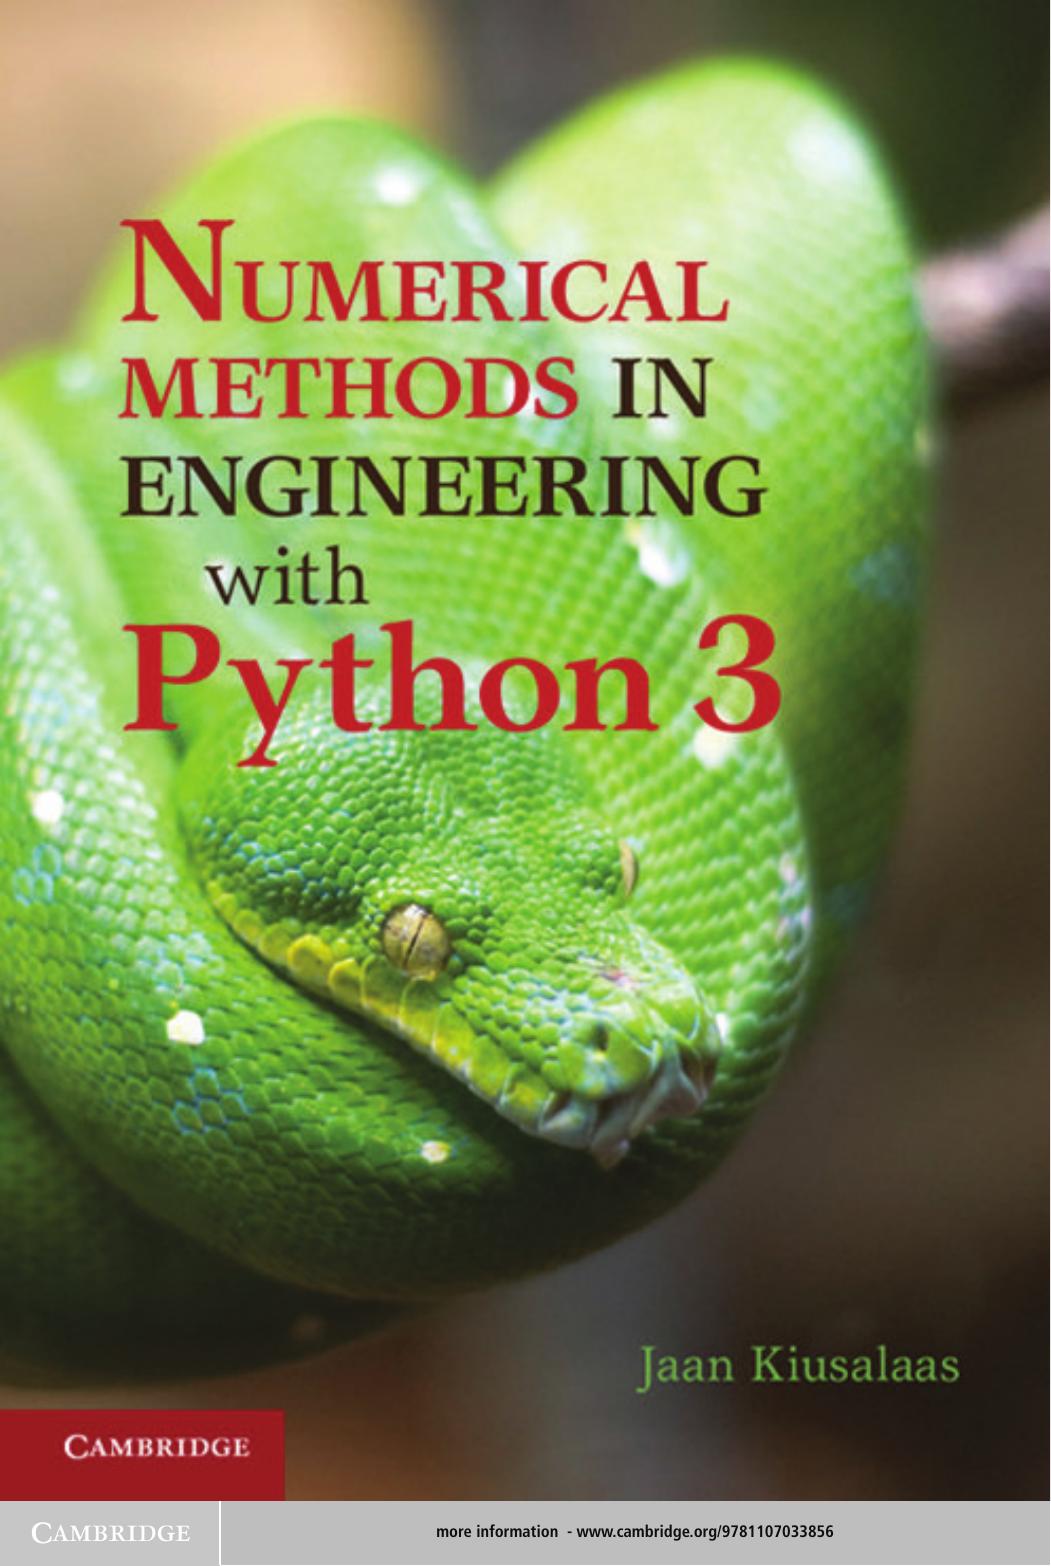 Numerical Methods in Engineering with Python 3-Kiusalaas, Jaan-.jpg